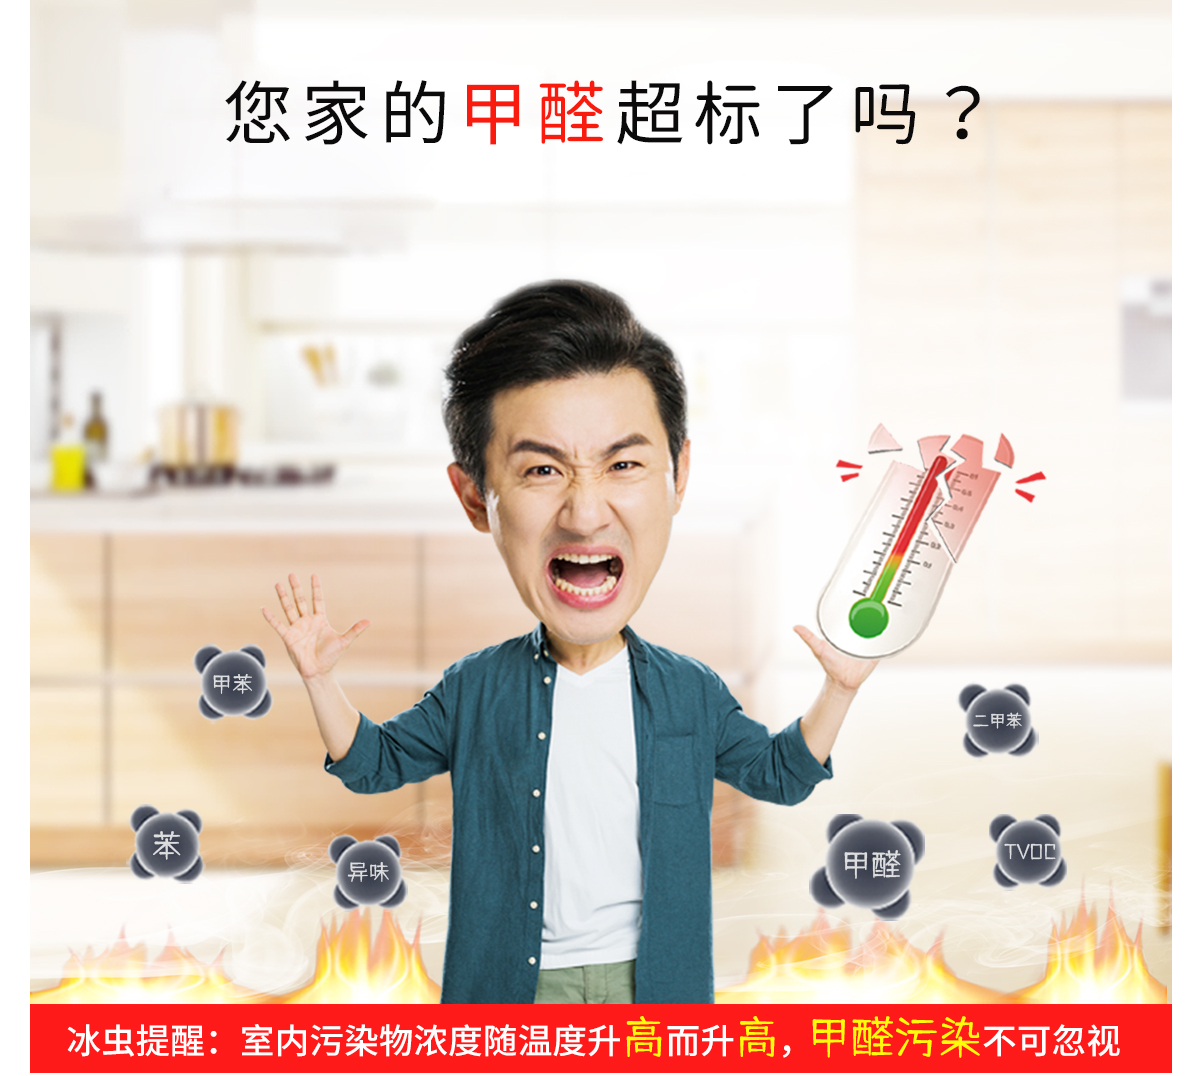 上海除甲醛公司-上海除甲醛-室内污染物浓度随温度升高而升高，您家的甲醛超标了吗